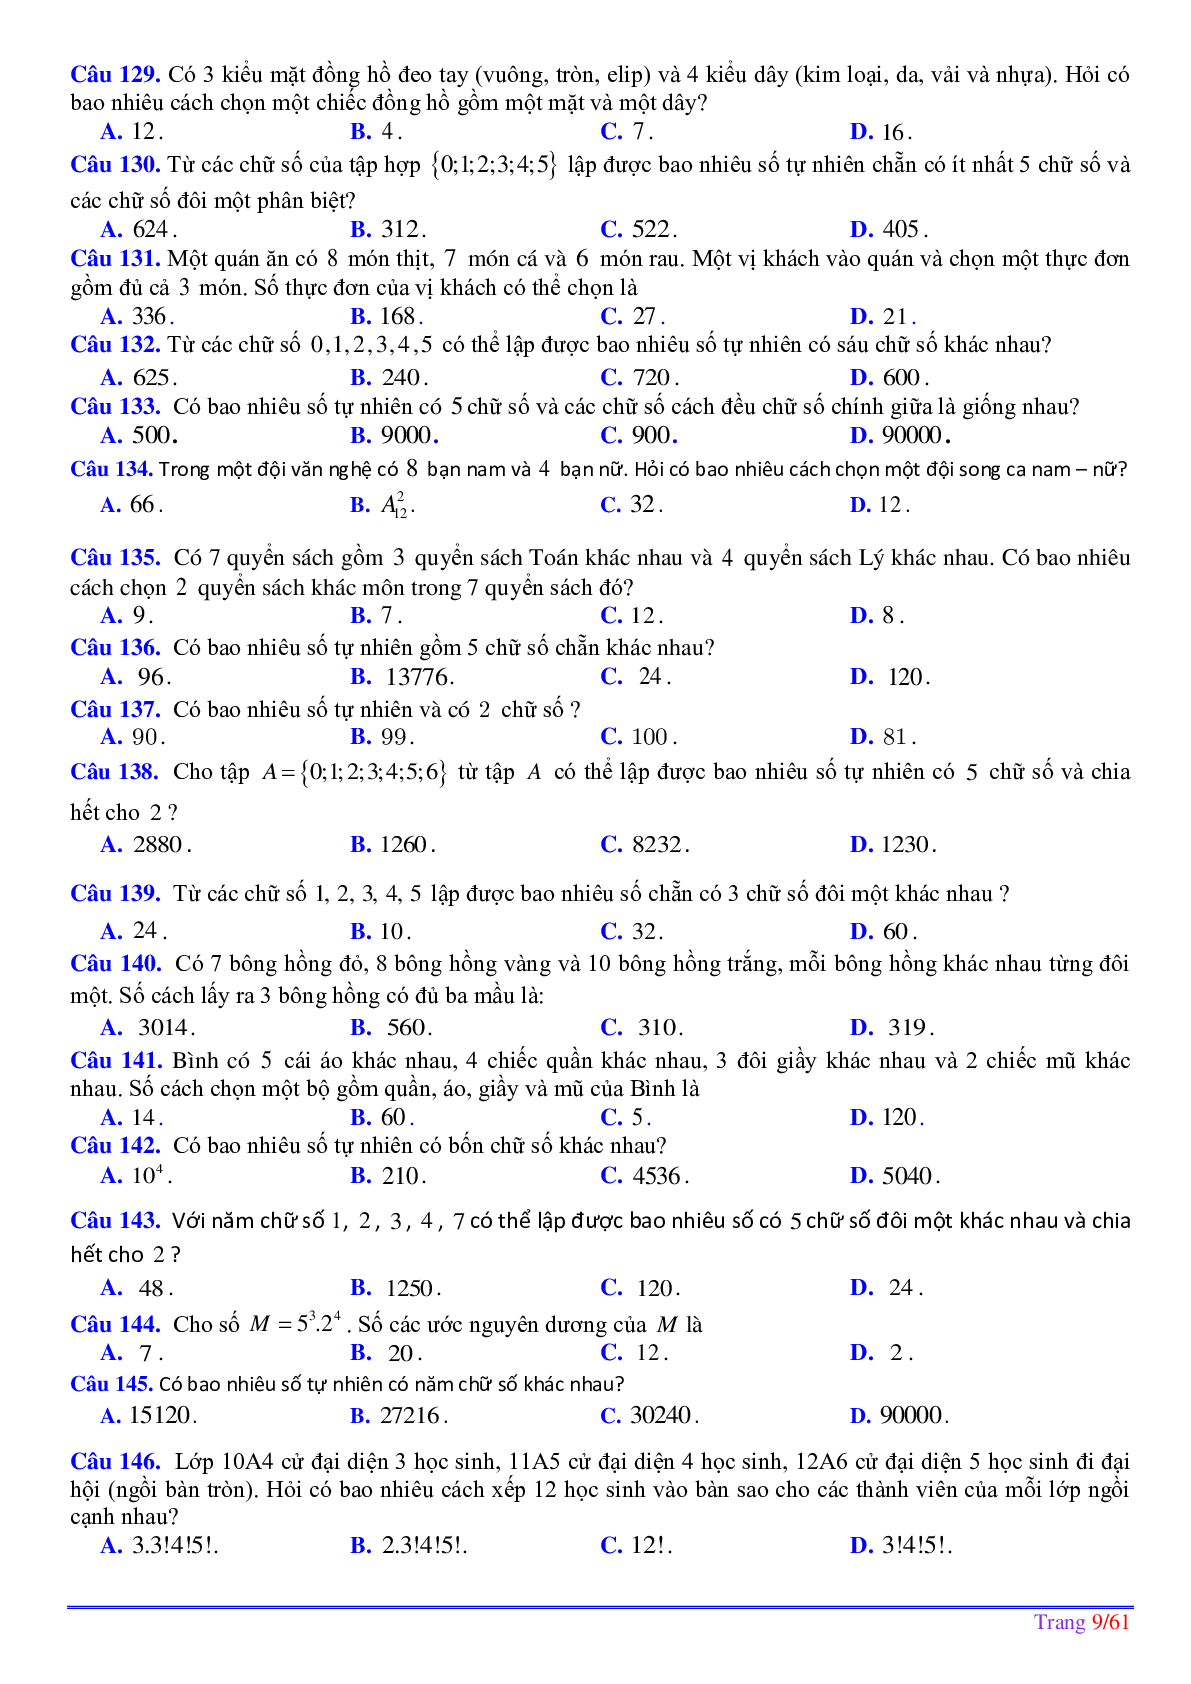 252 bài toán phép đếm ôn thi tốt nghiệp THPT (trang 10)